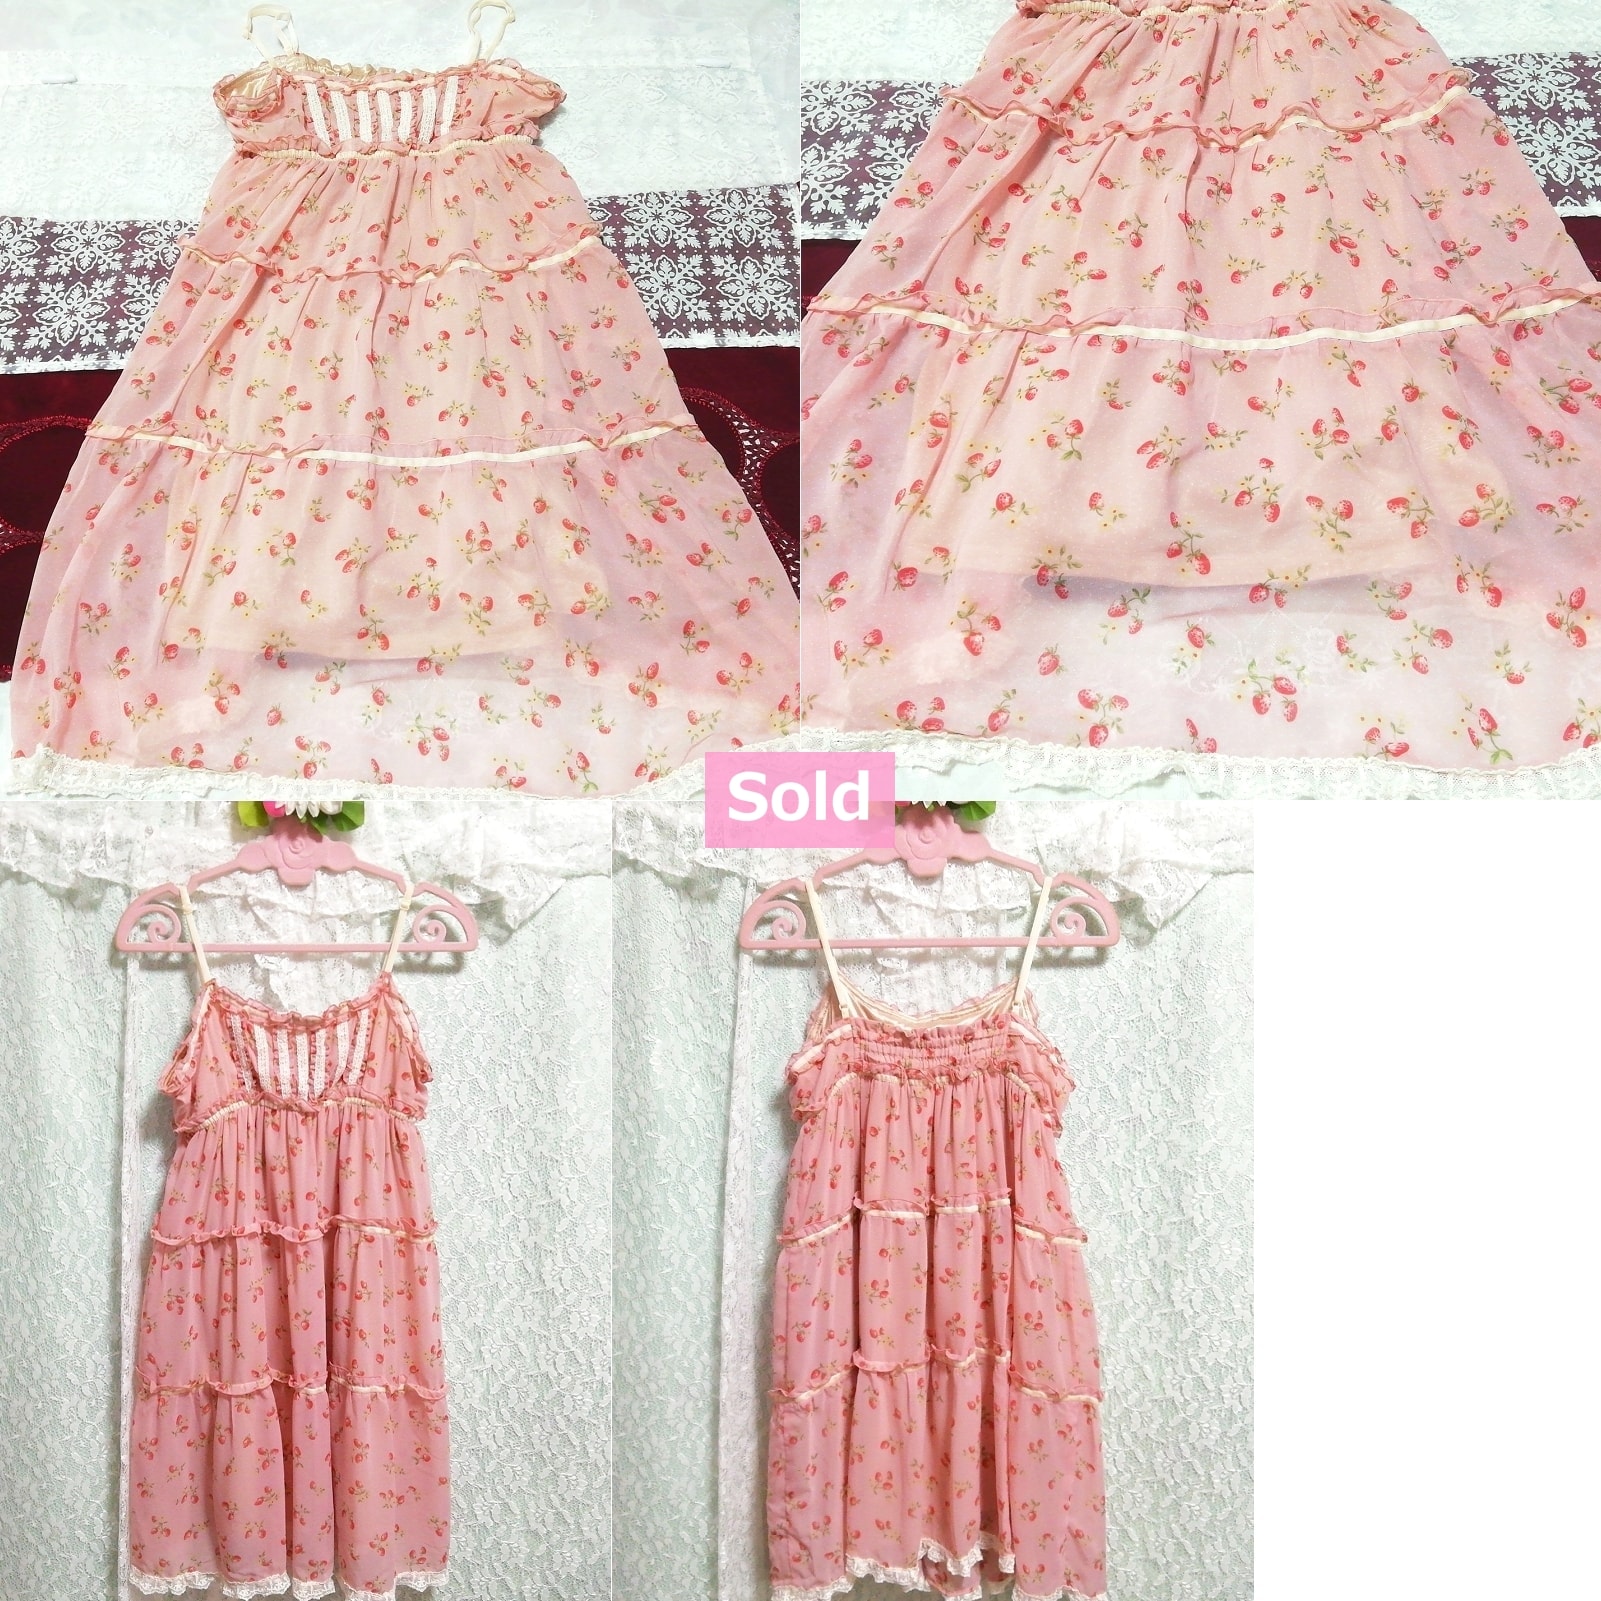 핑크 체리무늬 화이트 레이스 쉬폰 나이트가운 캐미솔 드레스, 패션, 숙녀 패션, 캐미솔